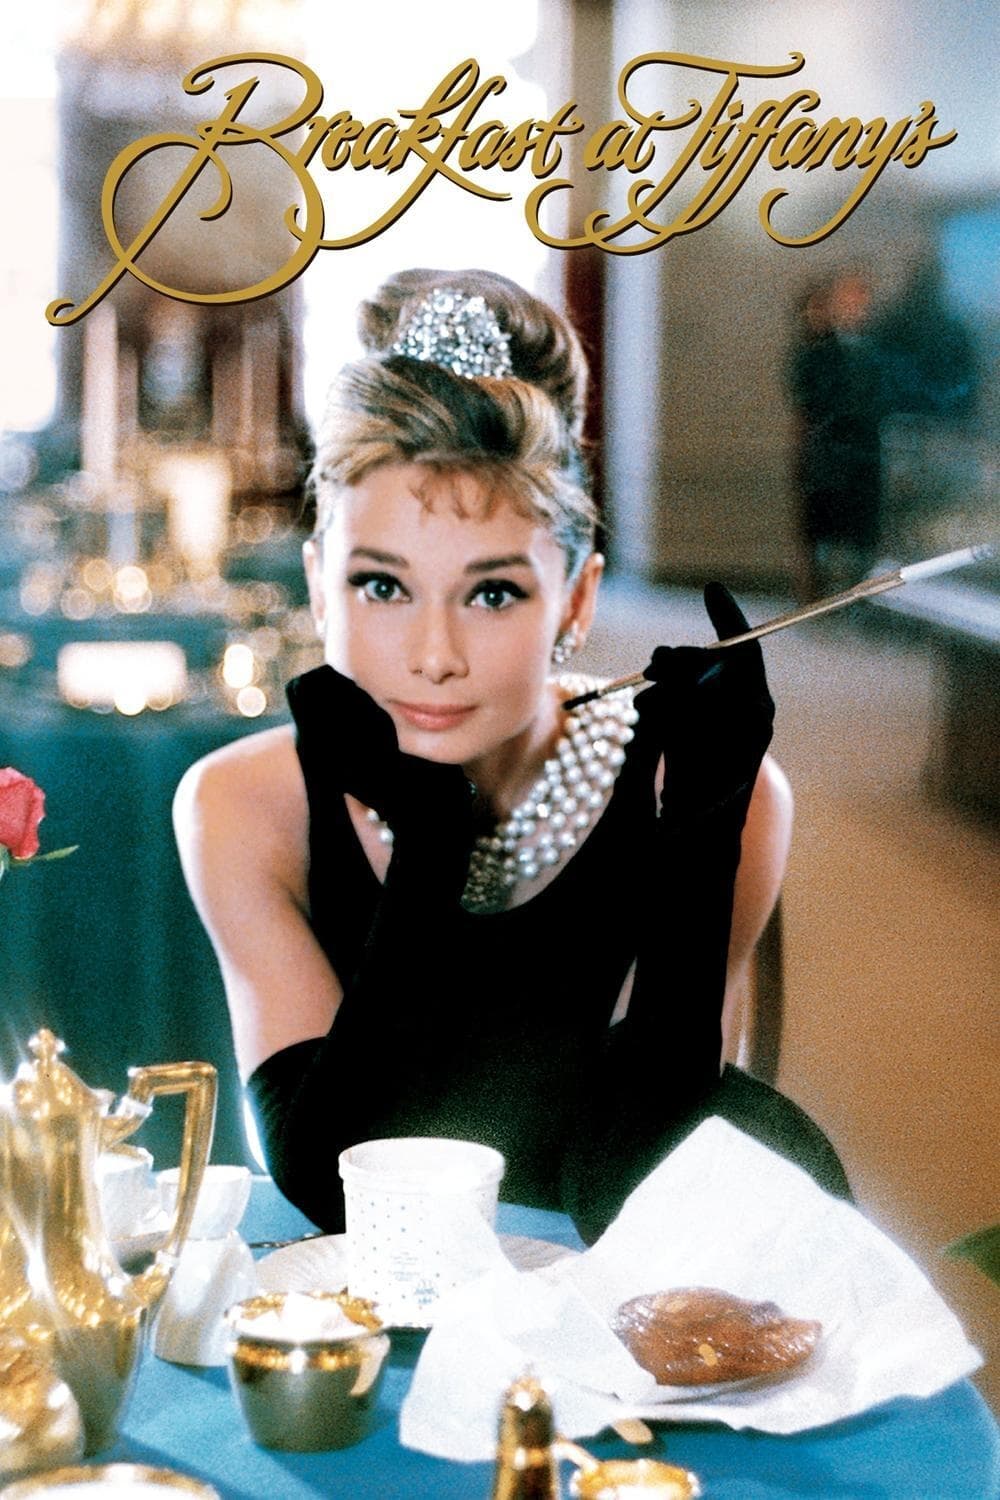 ดูหนังออนไลน์ฟรี Breakfast at Tiffany’s 1961 นงเยาว์นิวยอร์ค